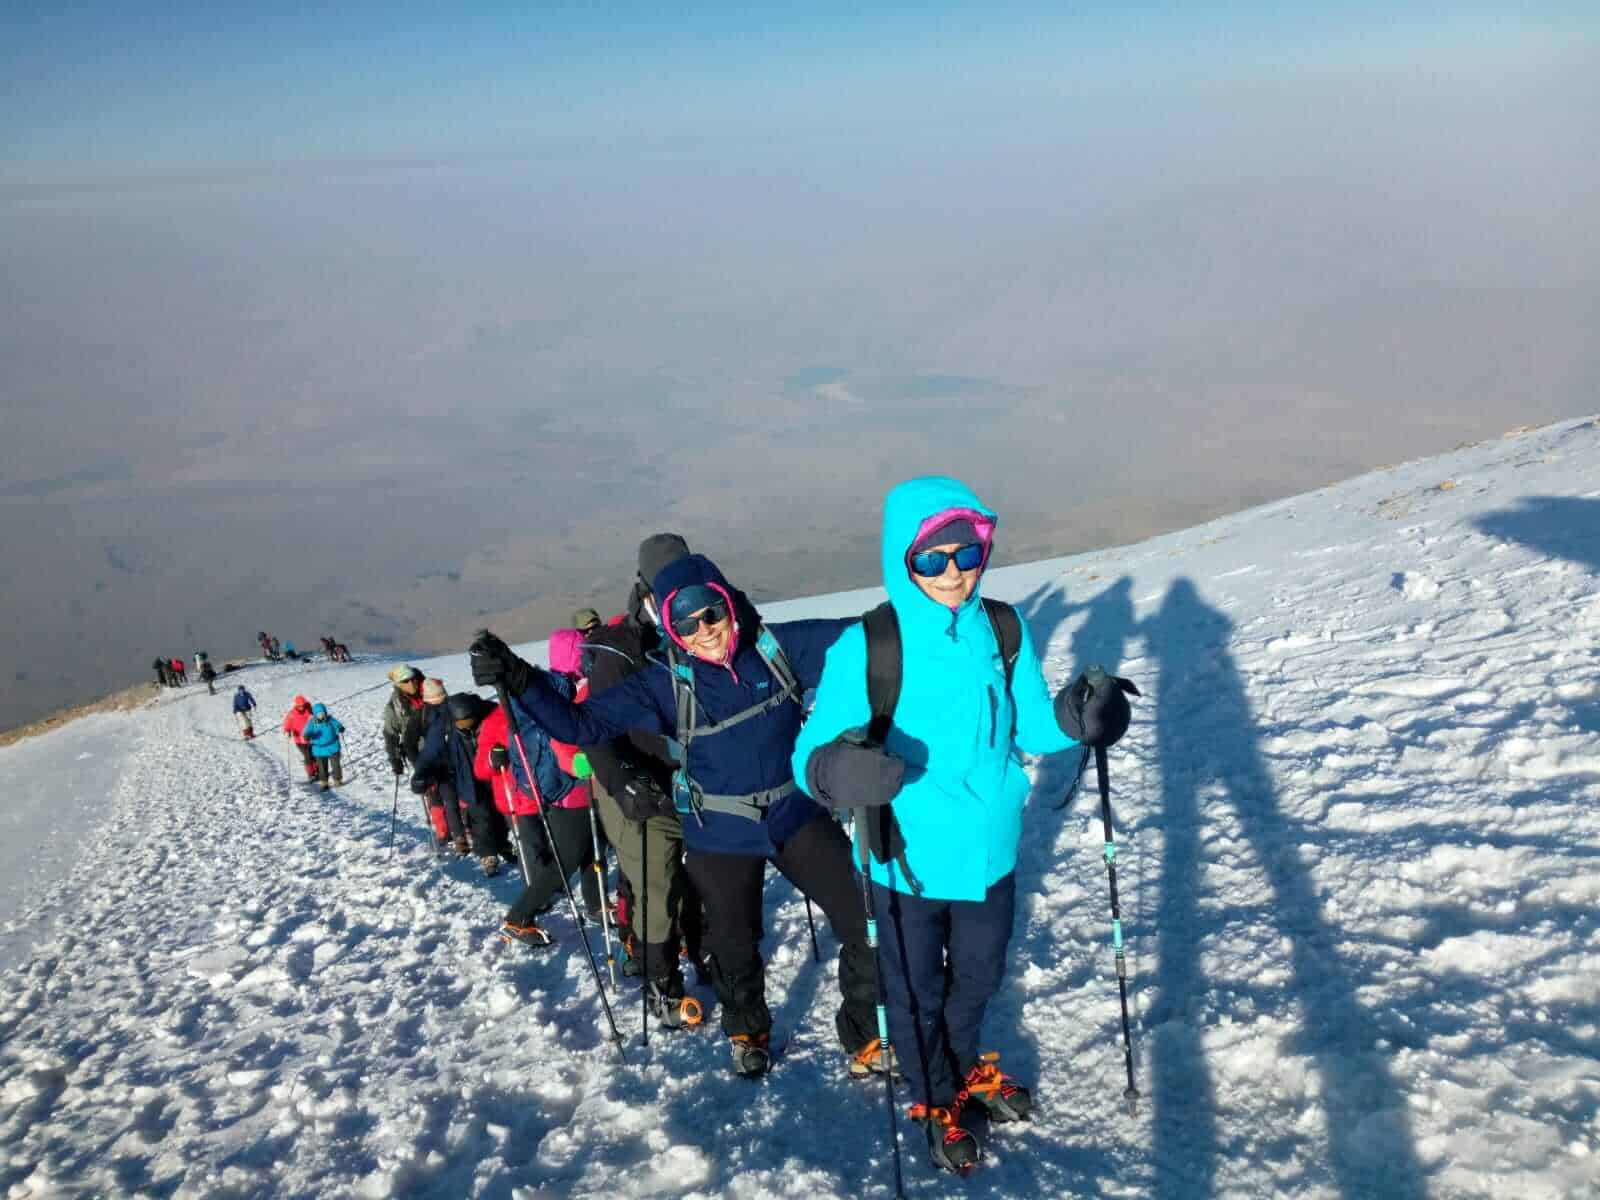 Góra Ararat w Turcji, czyli kierunek wyprawy, którą musisz zaliczyć! - jeszcze trochę, jeszcze chwila!